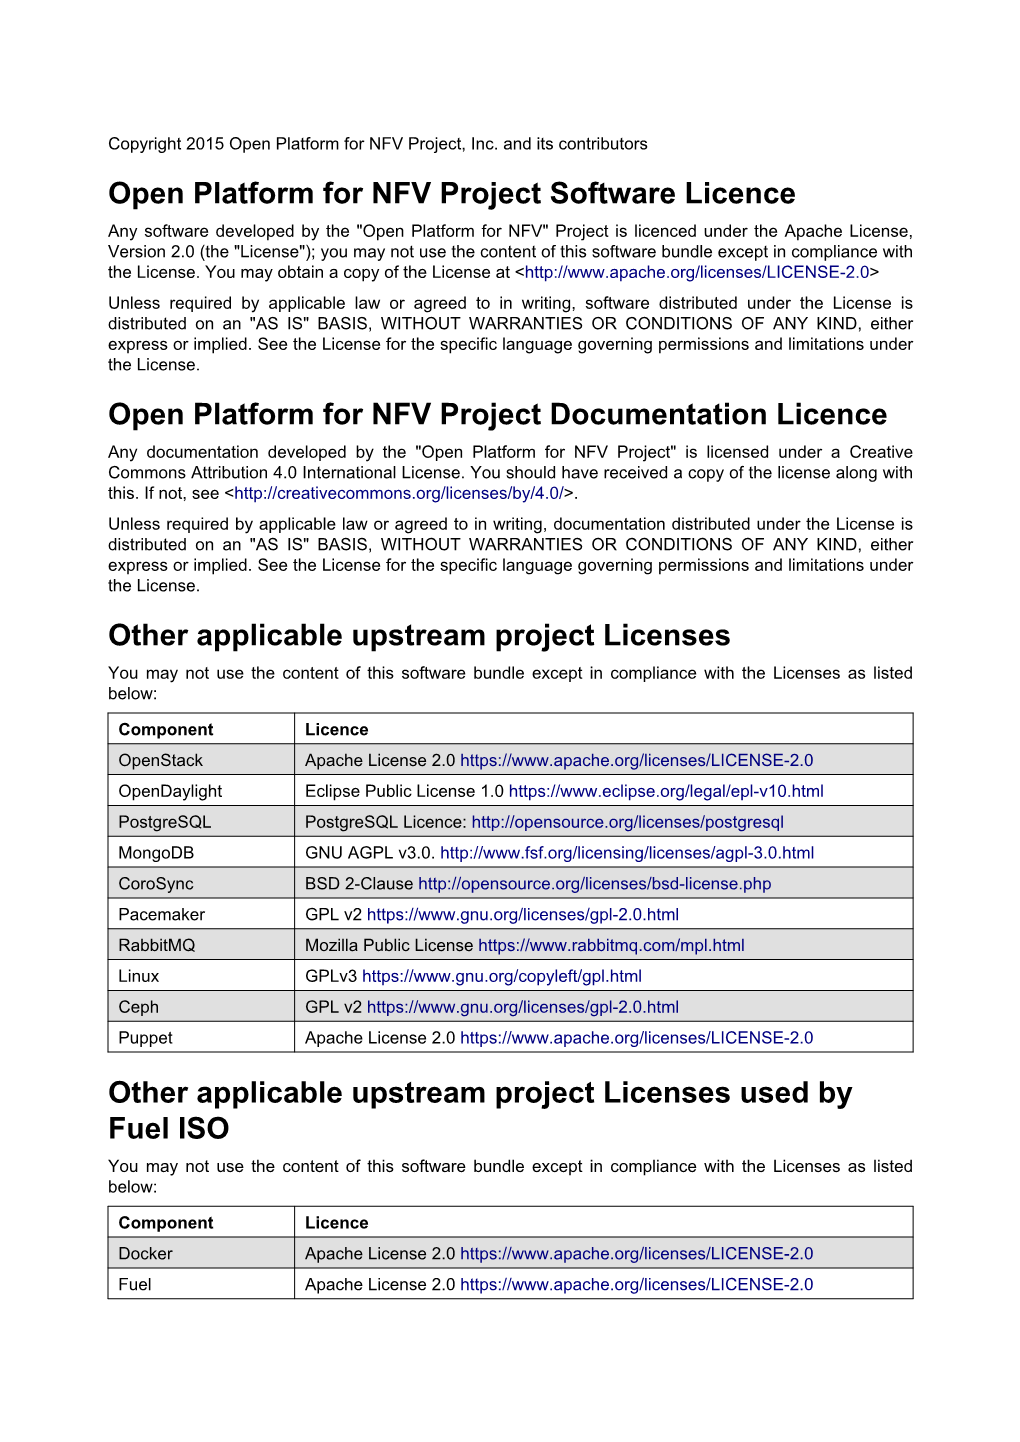 Open Platform for NFV Project Software Licence